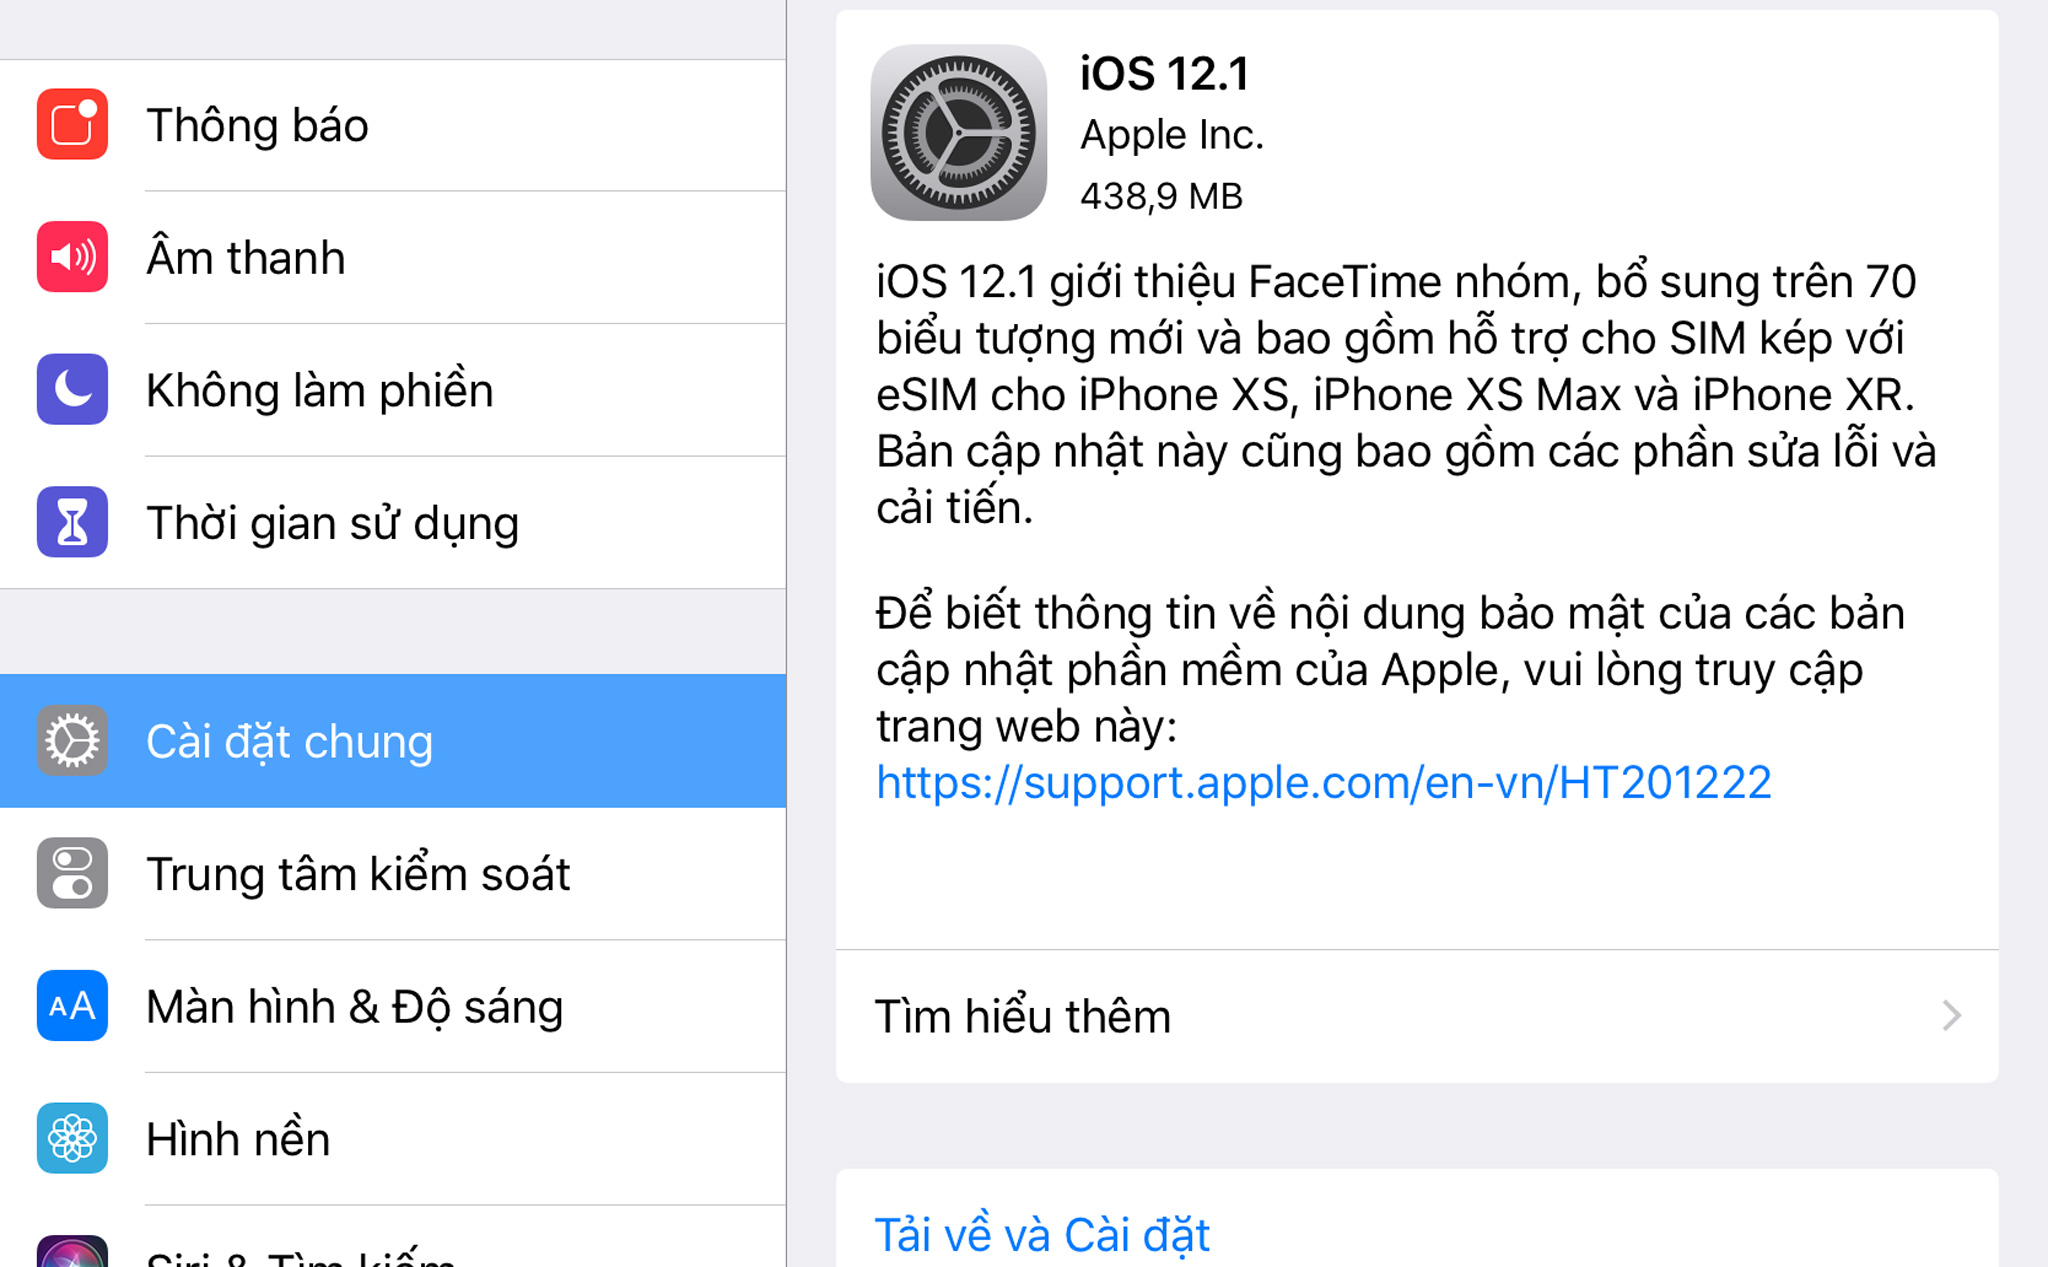 Phiên bản iOS 12.1 chính thức được thông báo cập nhật sau sự kiện Apple